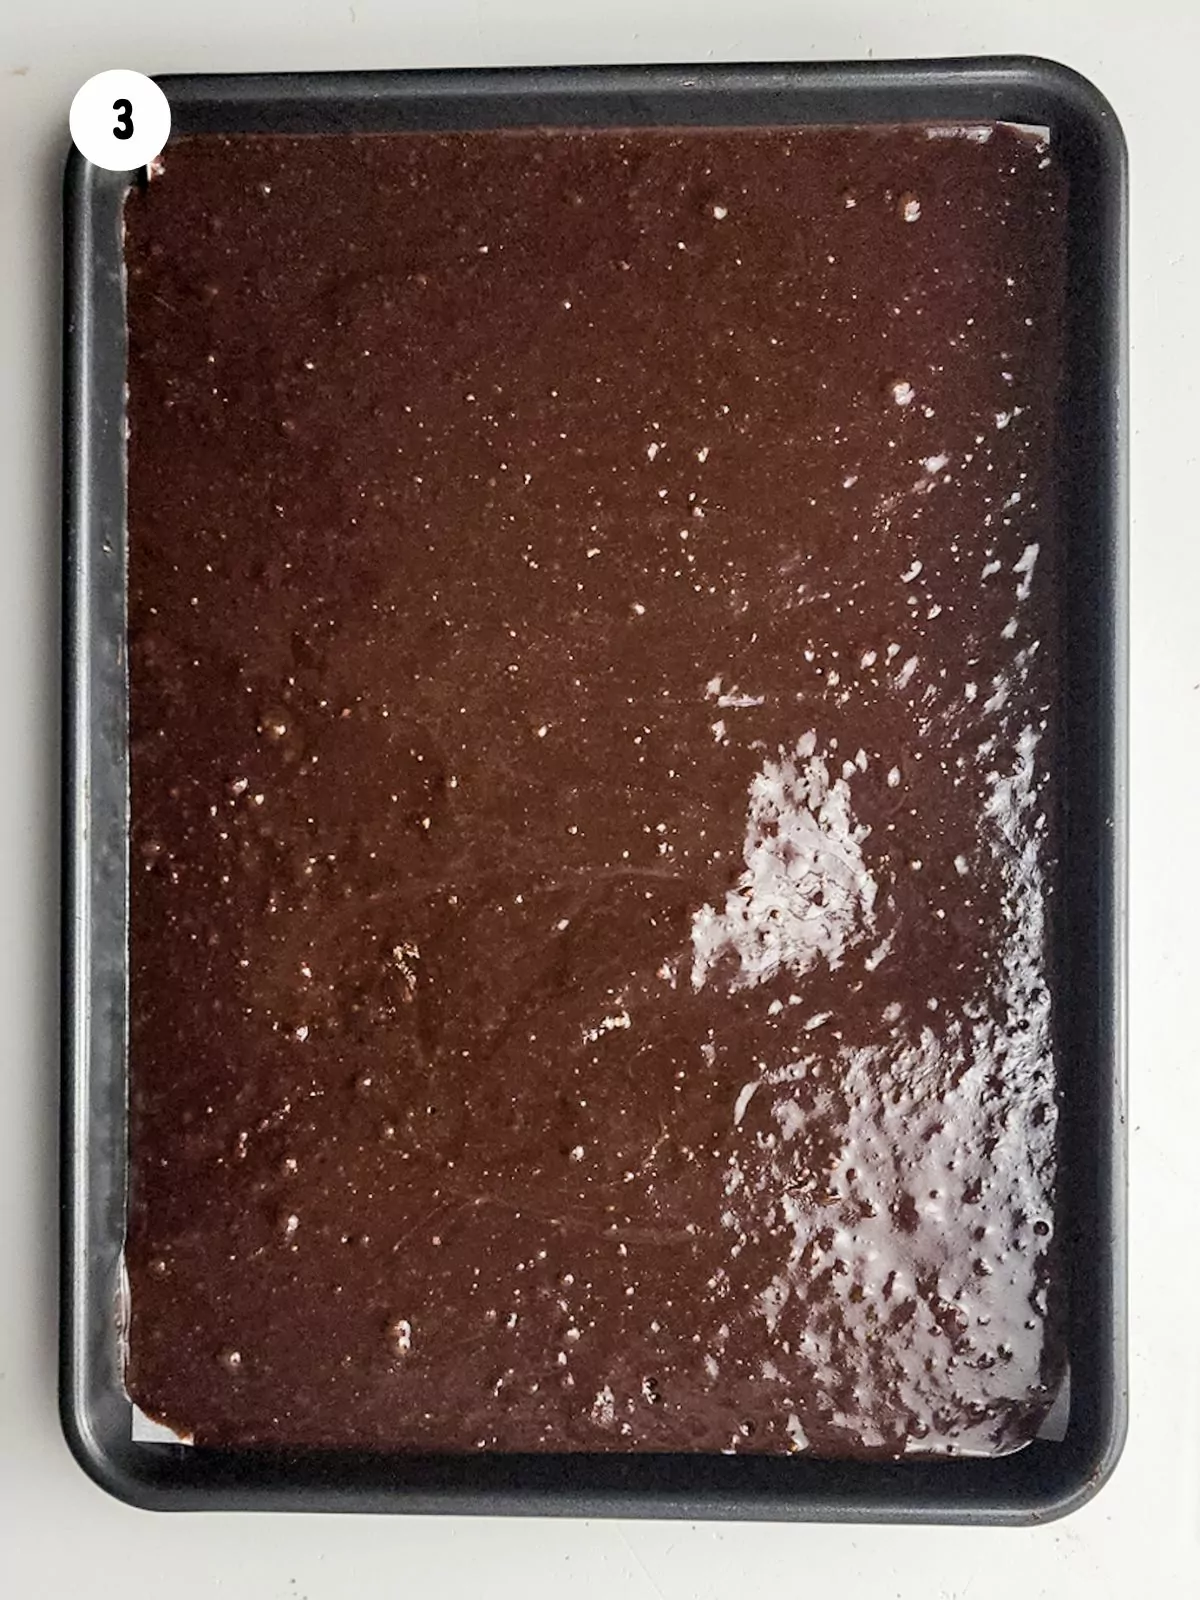 brownie batter in pan.